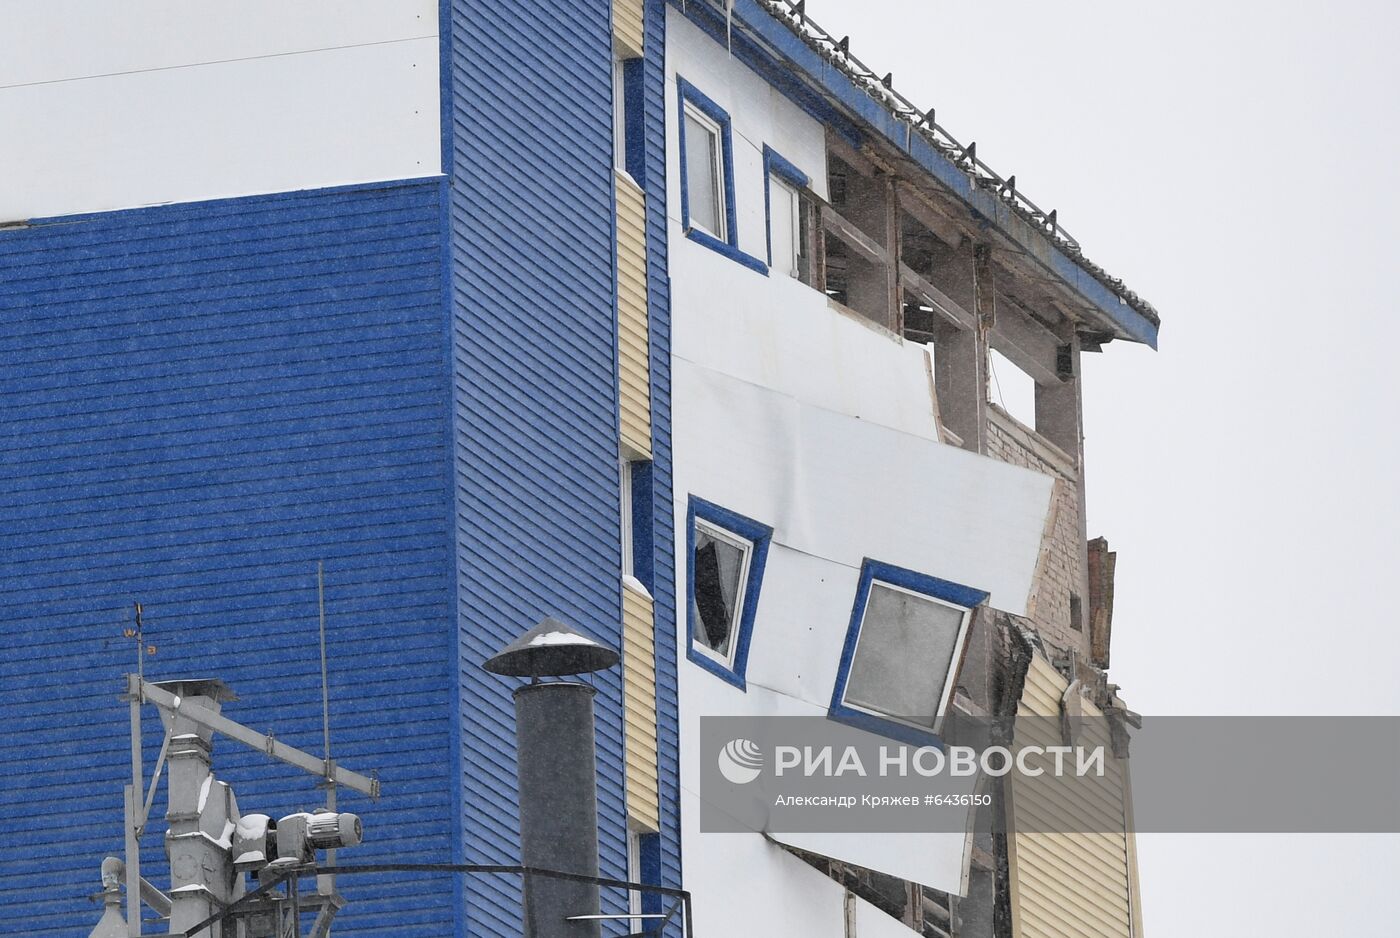 Производственное здание частично обрушилось в Новосибирске